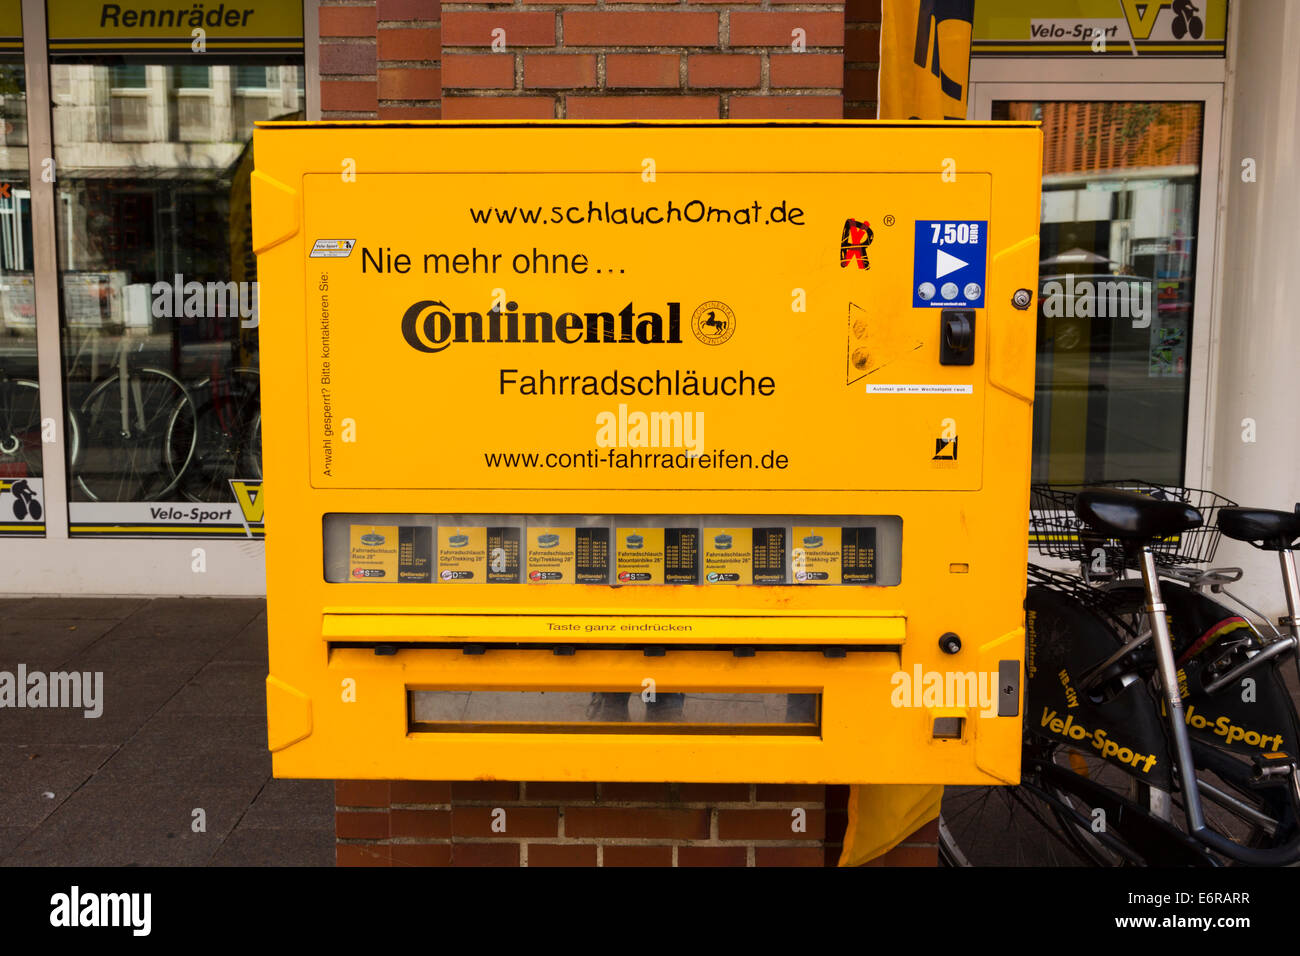 Kontinentales" Automat mit Fahrradschläuchen, Bremen, Deutschland  Stockfotografie - Alamy